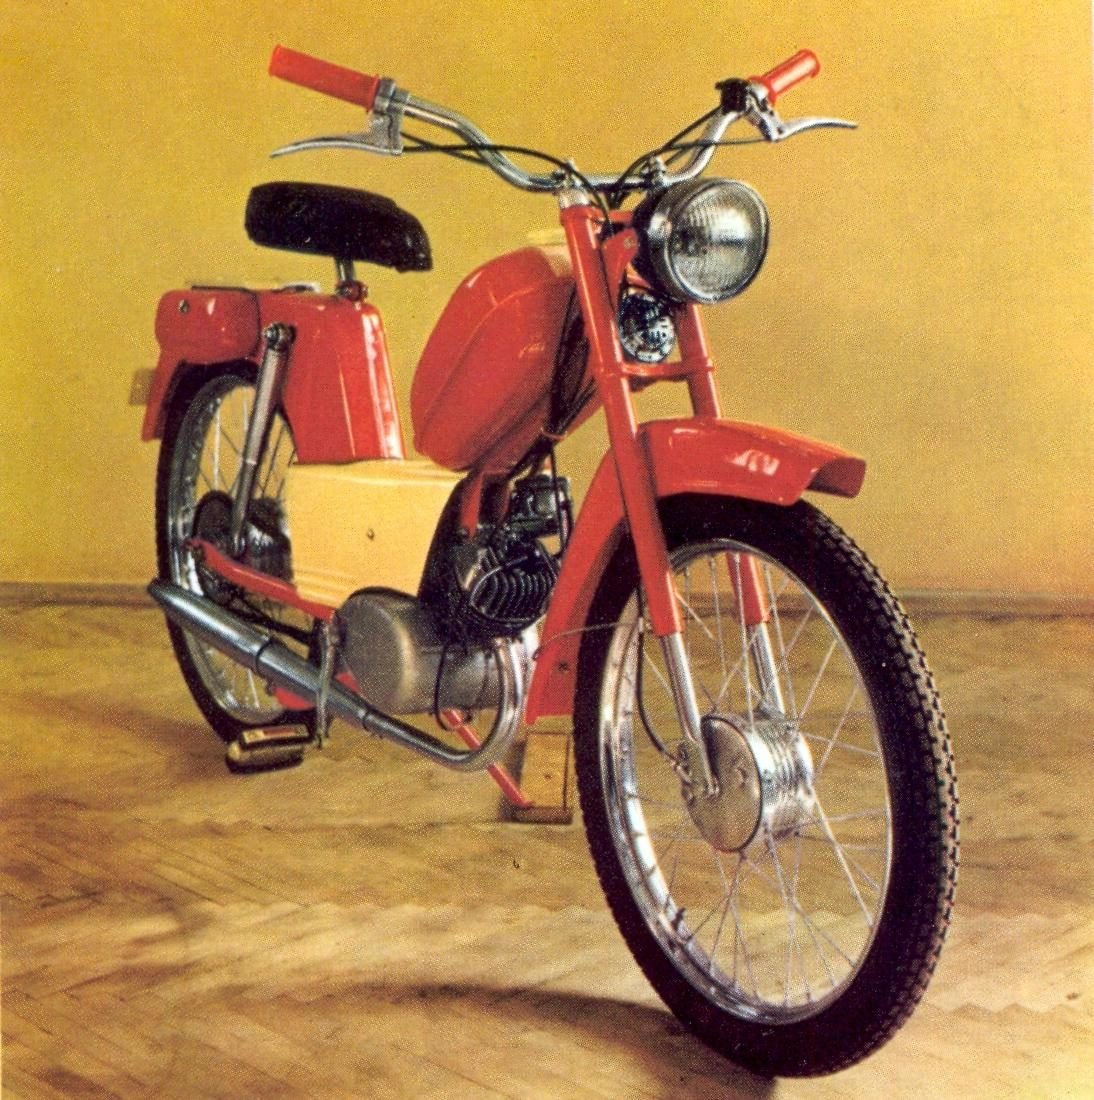 ИЖ-49 мотоцикл кастом